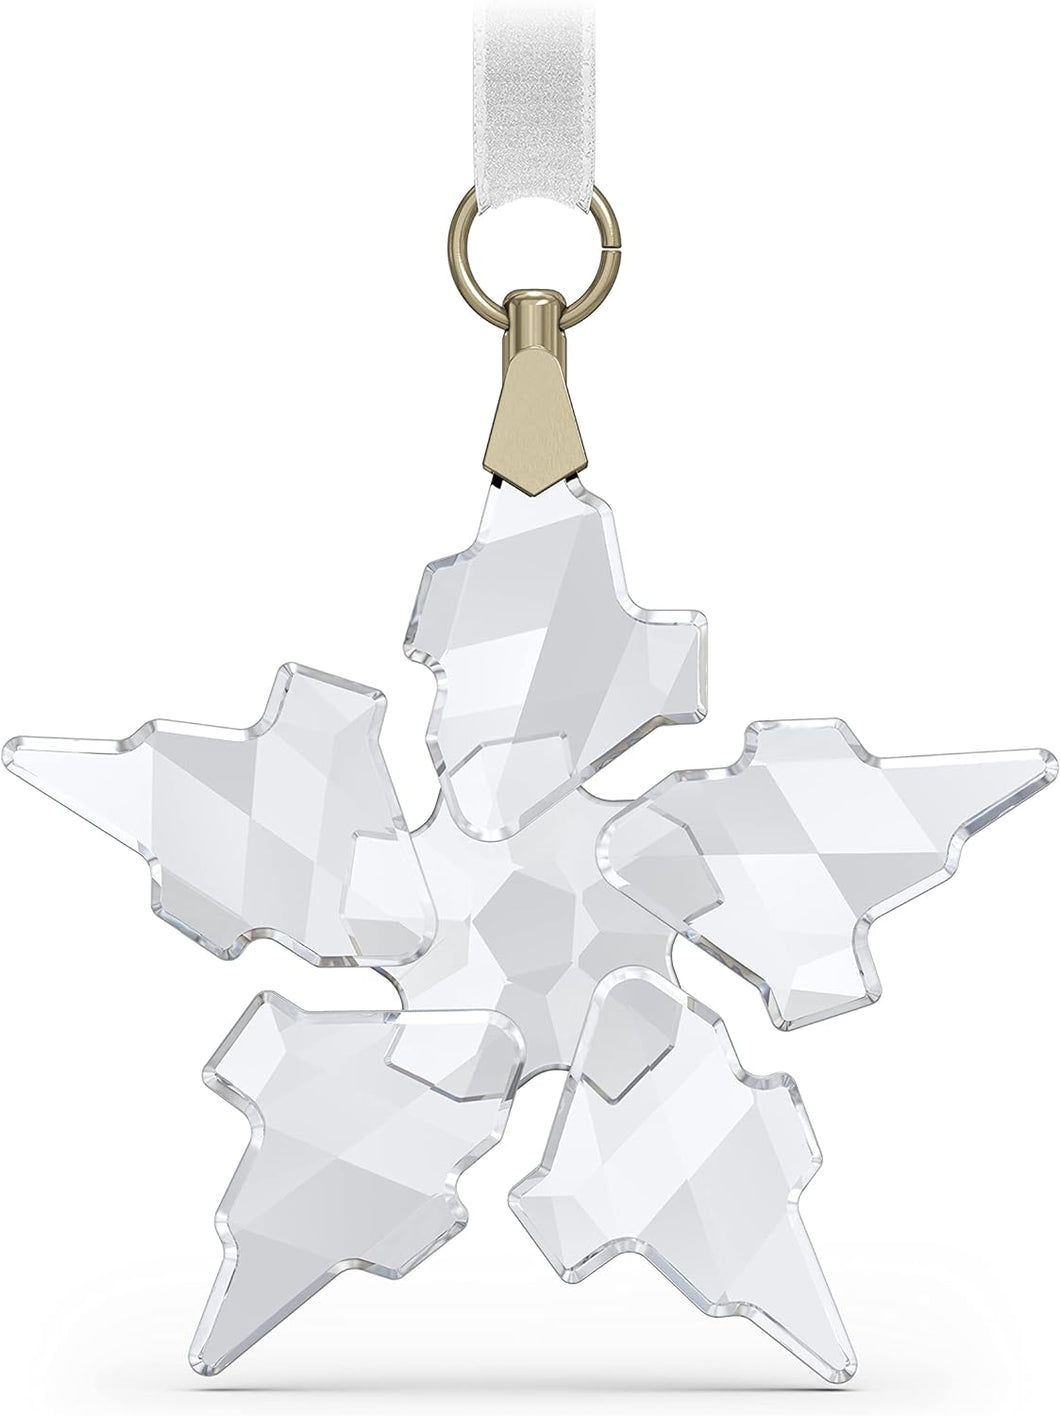 SWAROVSKI Weihnachtsschmuck | Jahresedition 2021, Kleiner Stern, klein, klarer Kristall 